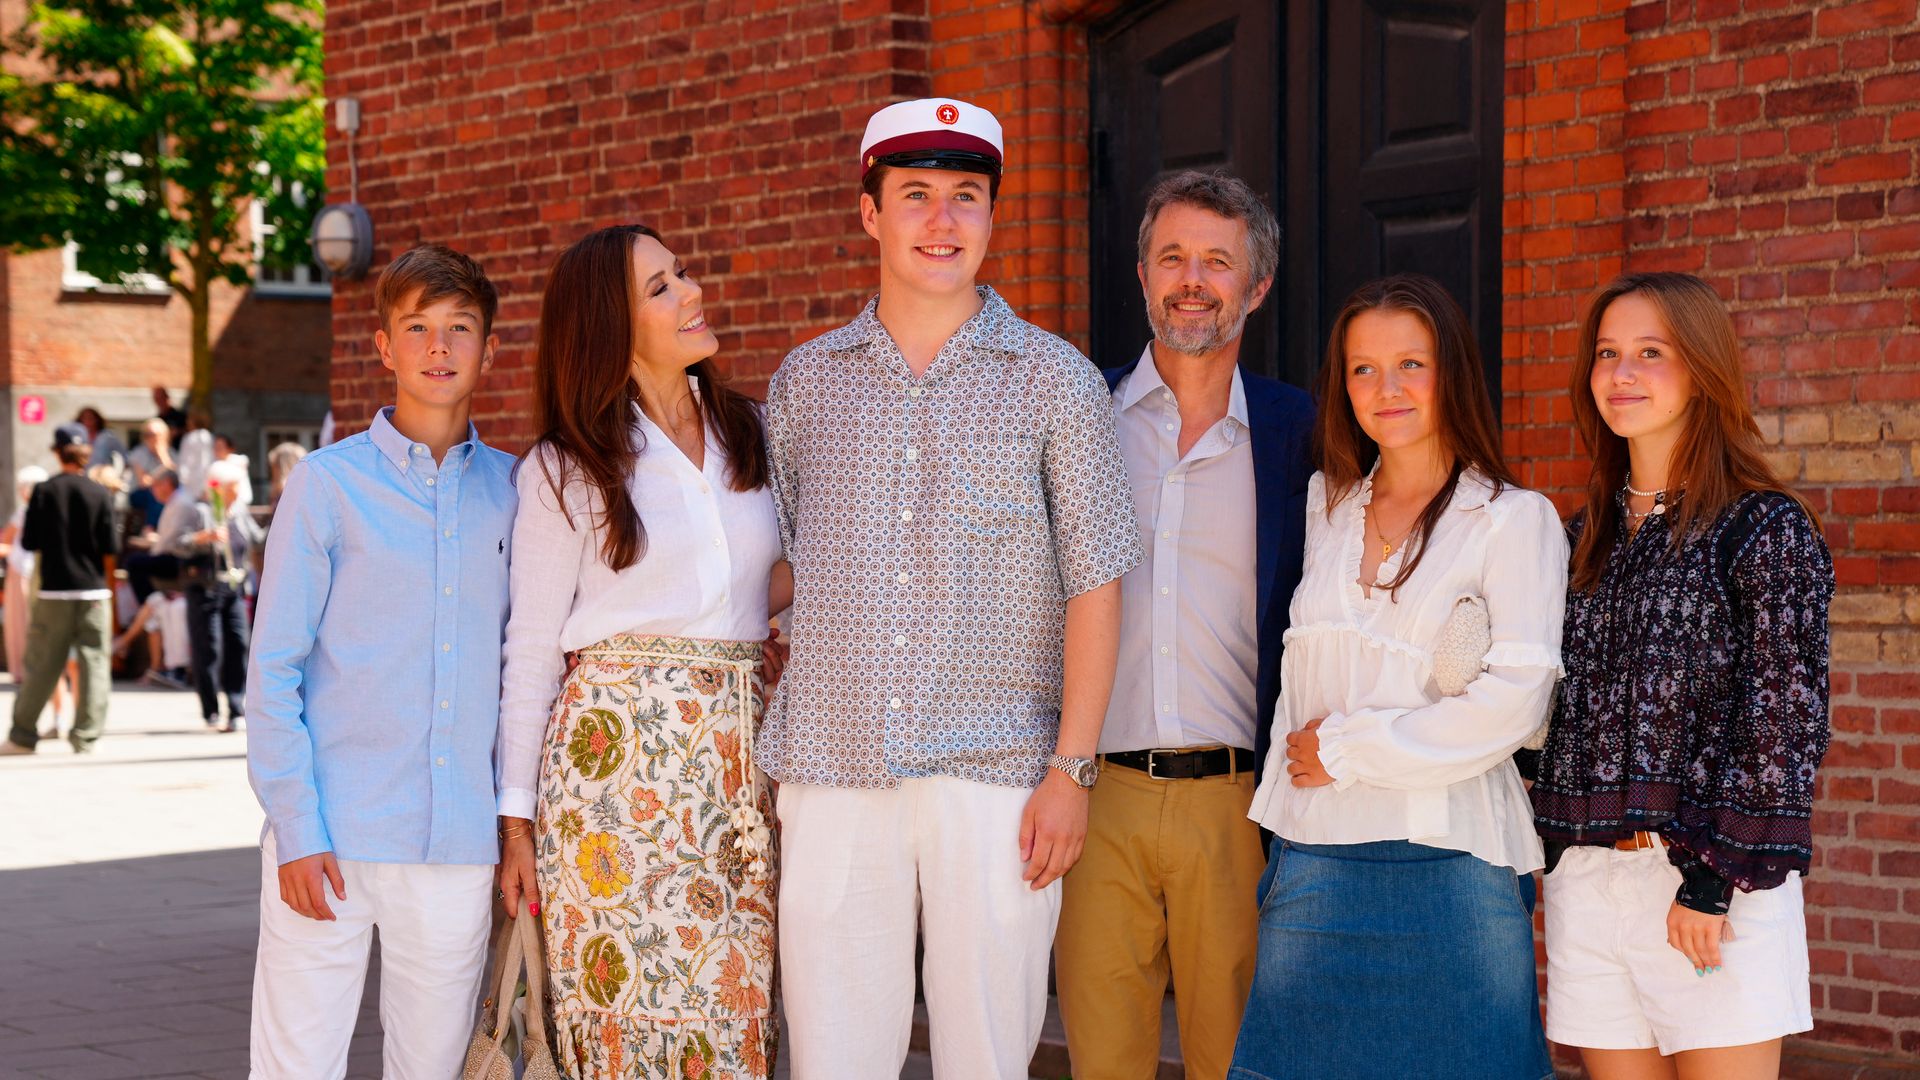 Christian de Dinamarca celebra el fin de curso junto a su familia y da pistas sobre sus planes de futuro